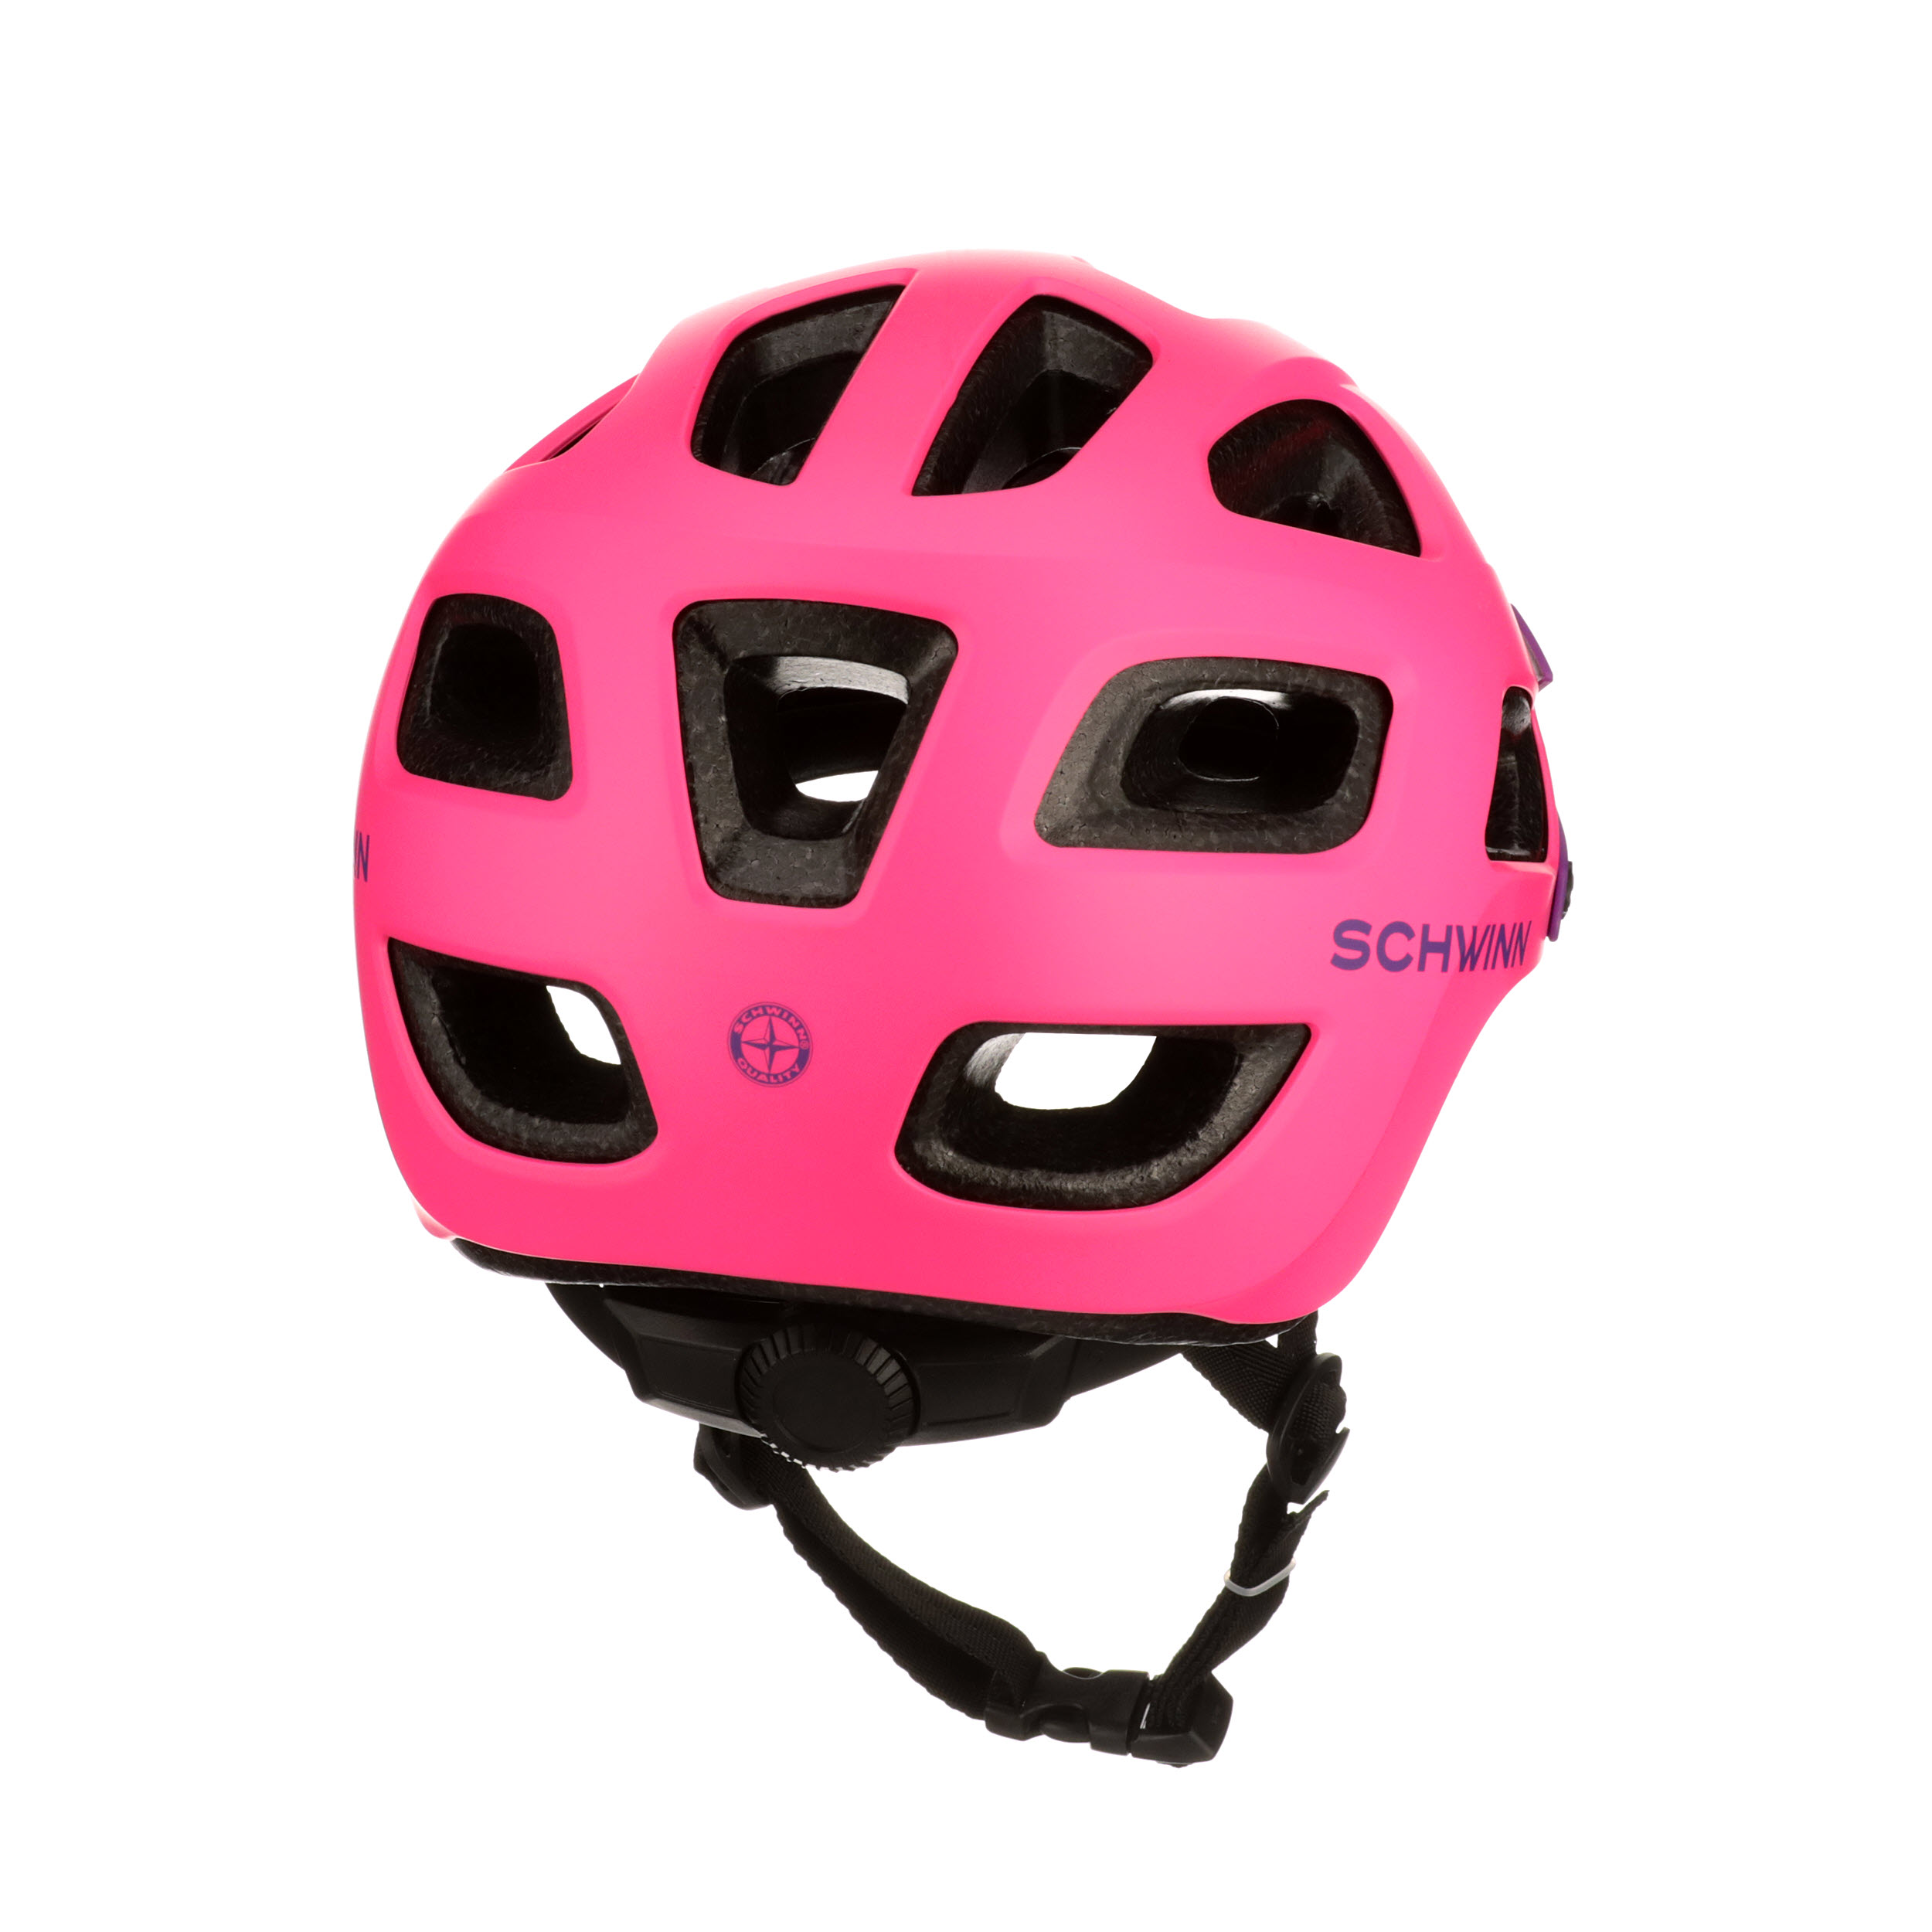 Ages 5-8 Schwinn Excursion Child Bicycle Helmet 